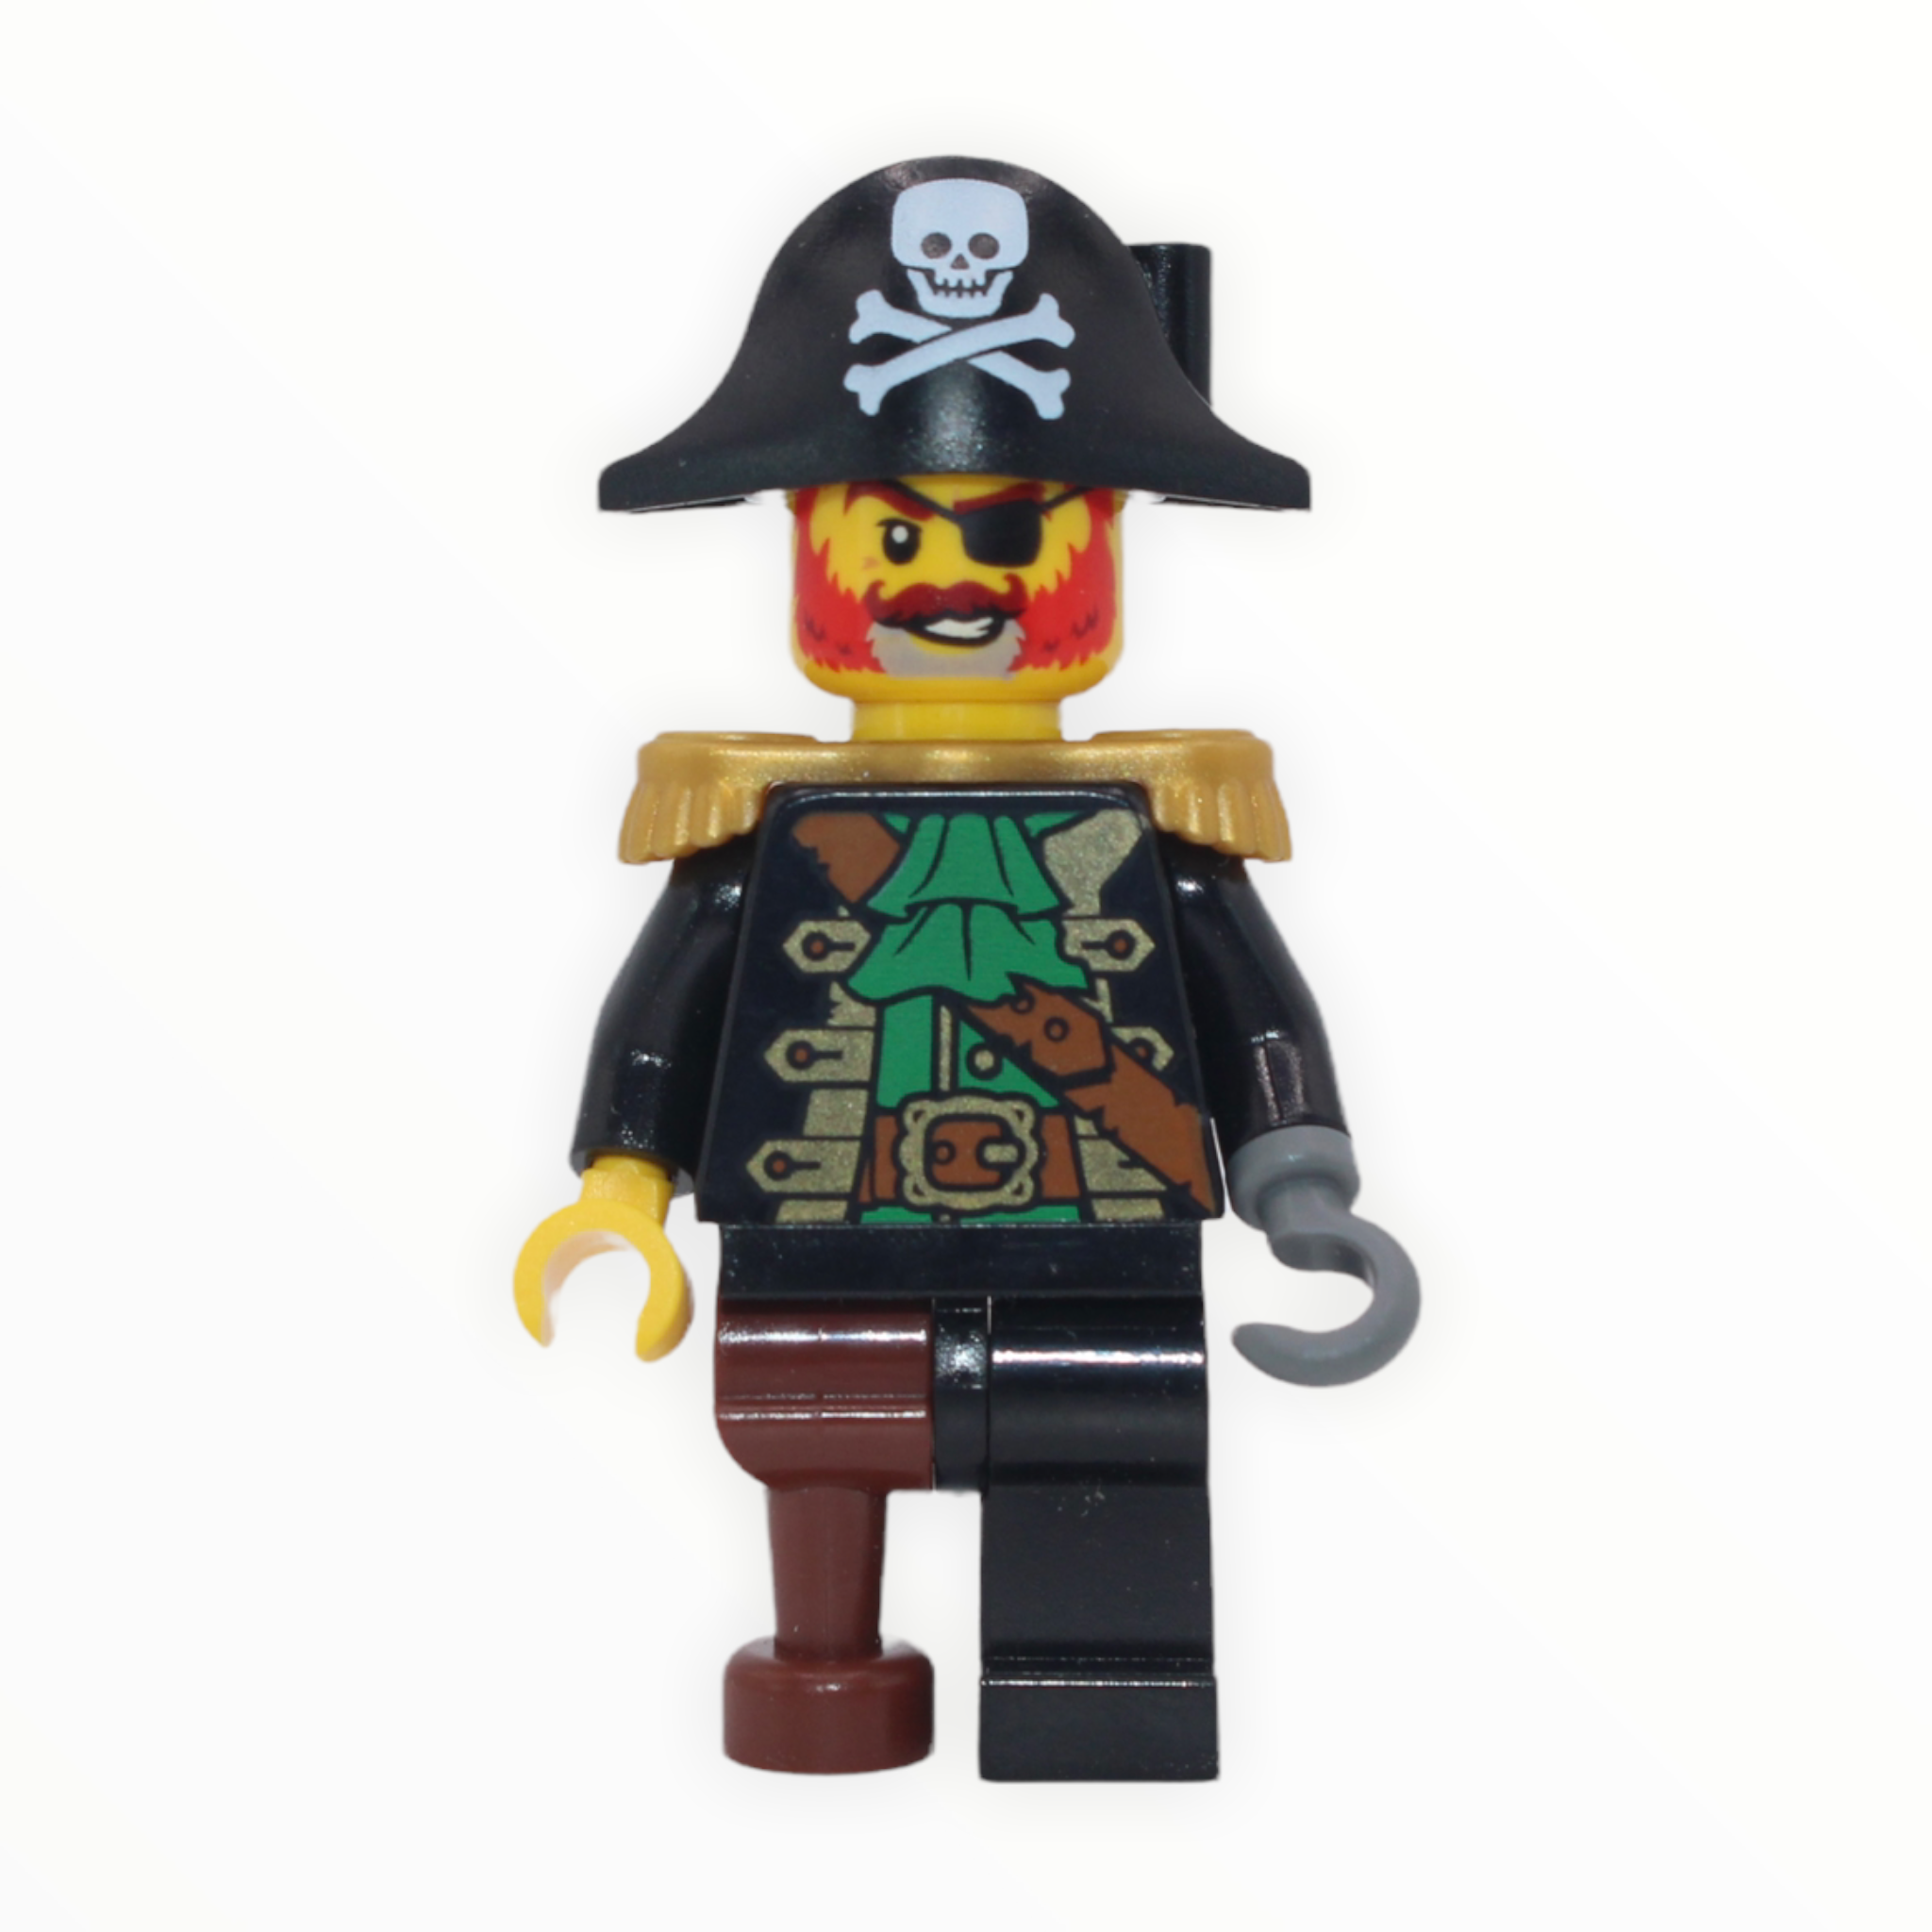 Captain Redbeard (LEGO Ideas)